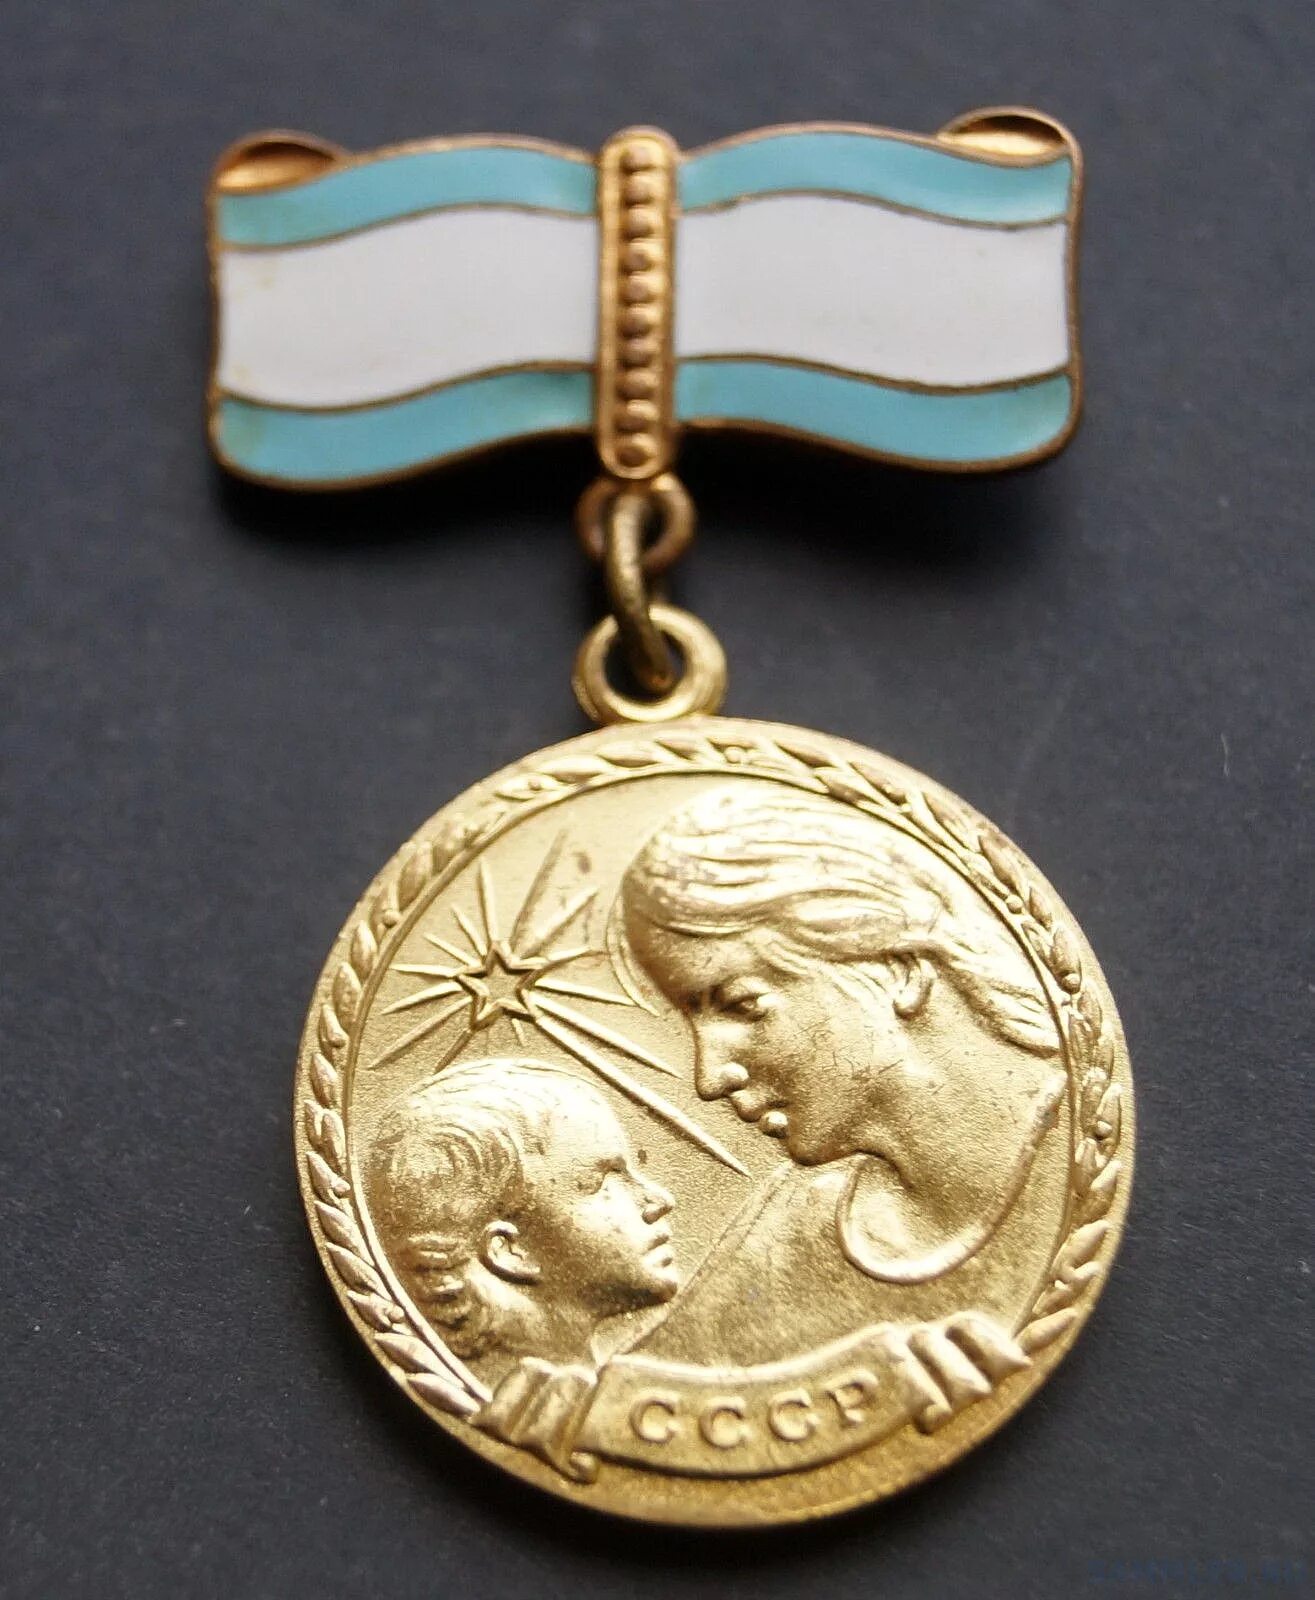 Медаль материнства 2 степени. Медаль материнства СССР 3 степени. Медаль материнства СССР (2 степень)золота. Медаль материнства СССР 1 степени.